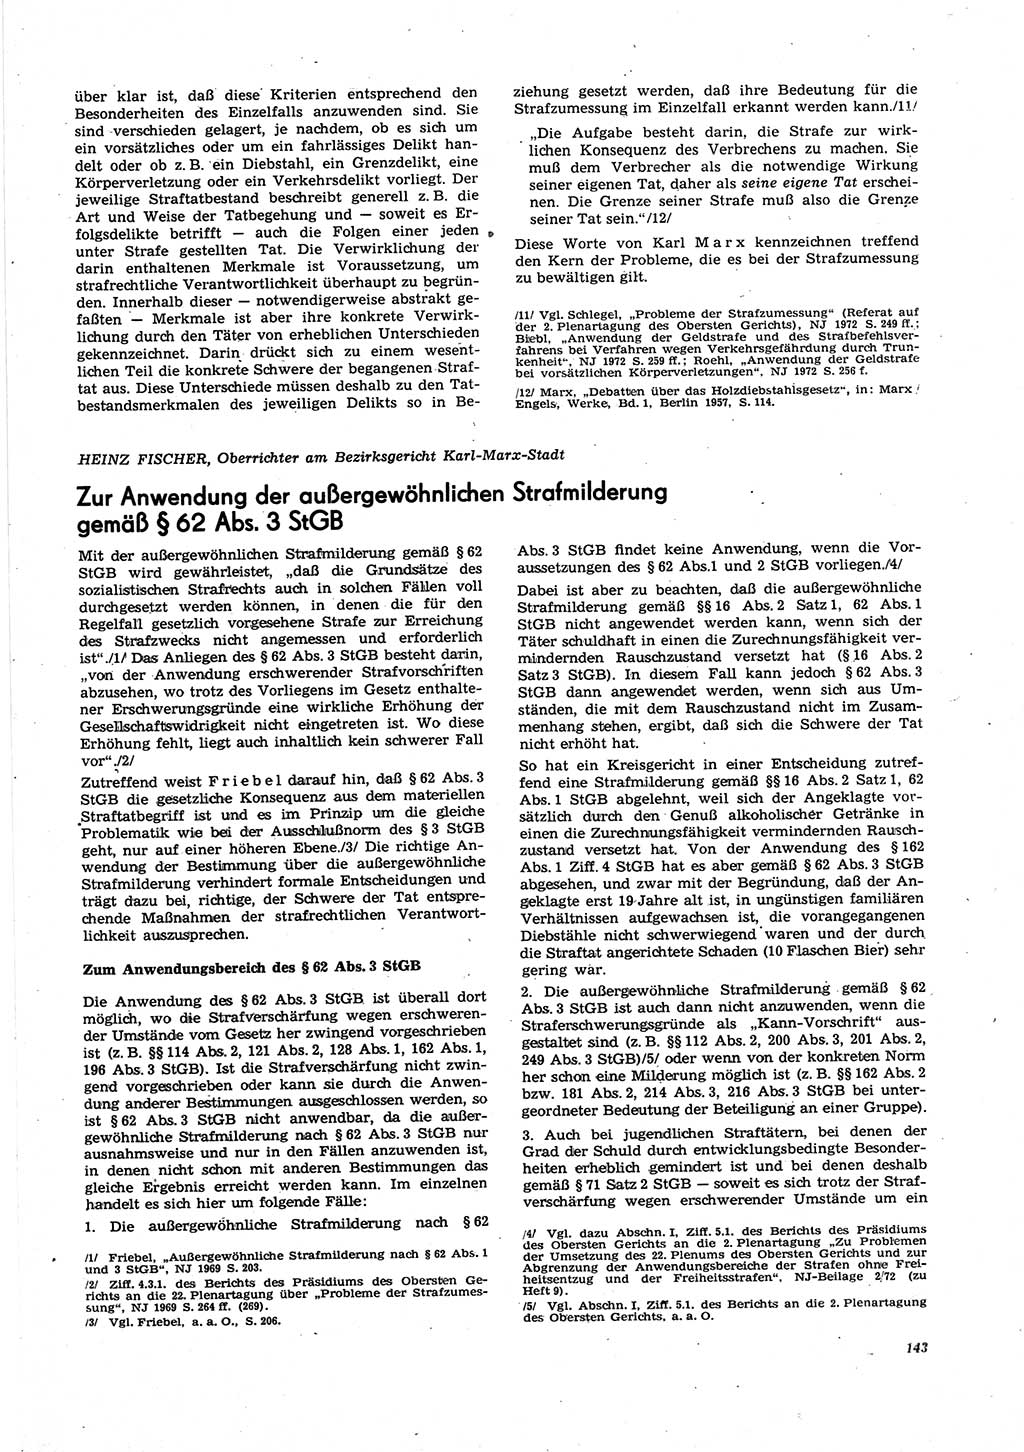 Neue Justiz (NJ), Zeitschrift für Recht und Rechtswissenschaft [Deutsche Demokratische Republik (DDR)], 27. Jahrgang 1973, Seite 143 (NJ DDR 1973, S. 143)